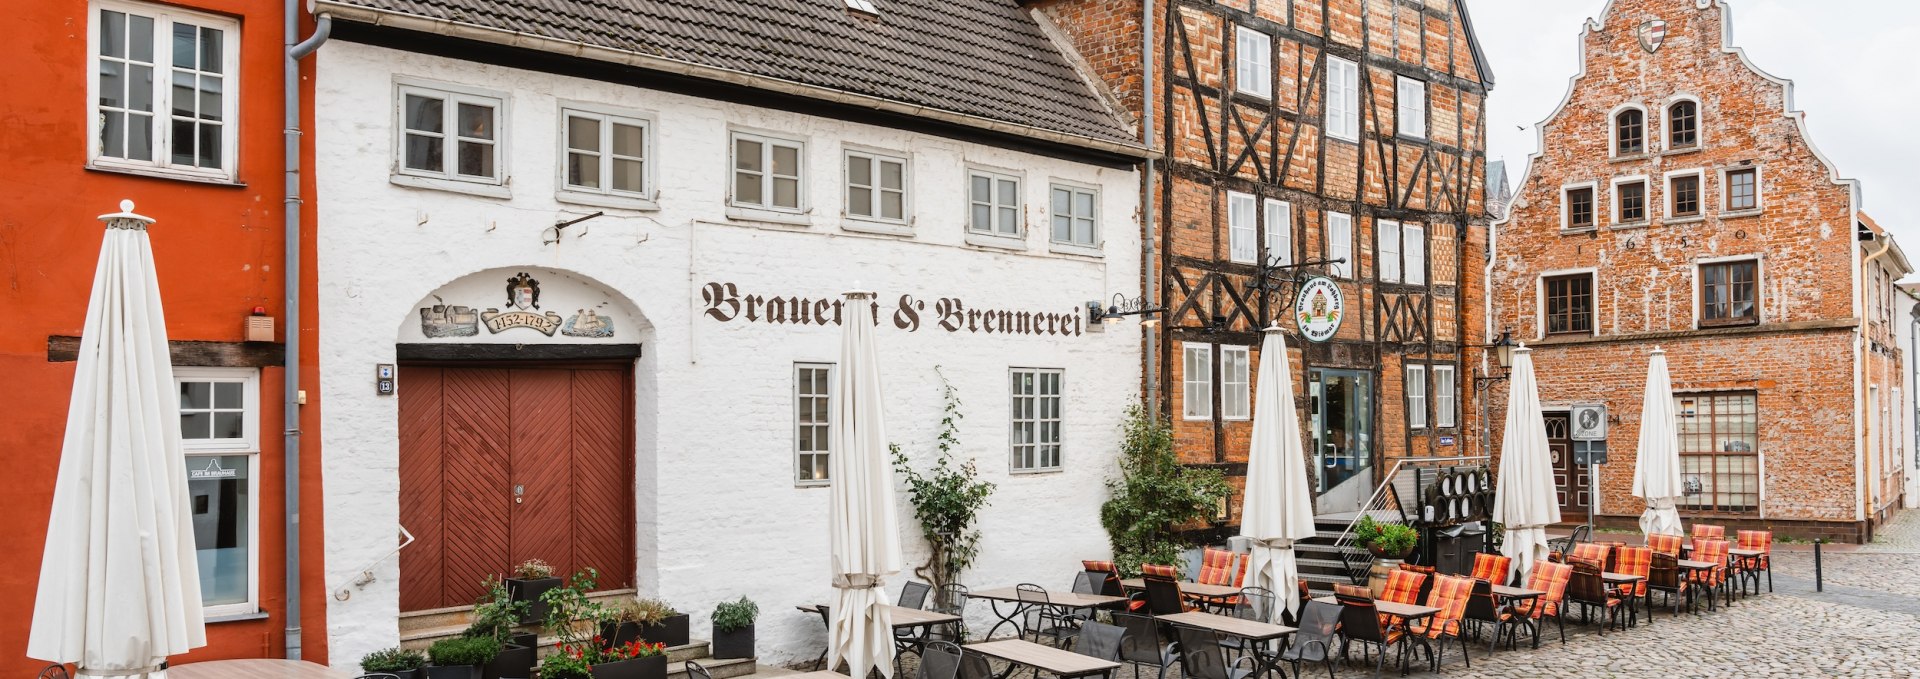 Das Brauhaus ist das letzte, das aus der einstigen Blütezeit des Bieres im Ostseebad Wismar überlebt hat. Gleich drei denkmalgeschützte Hansehäuser bieten ausreichend Platz für gesellige Abende. , © TMV/Gross